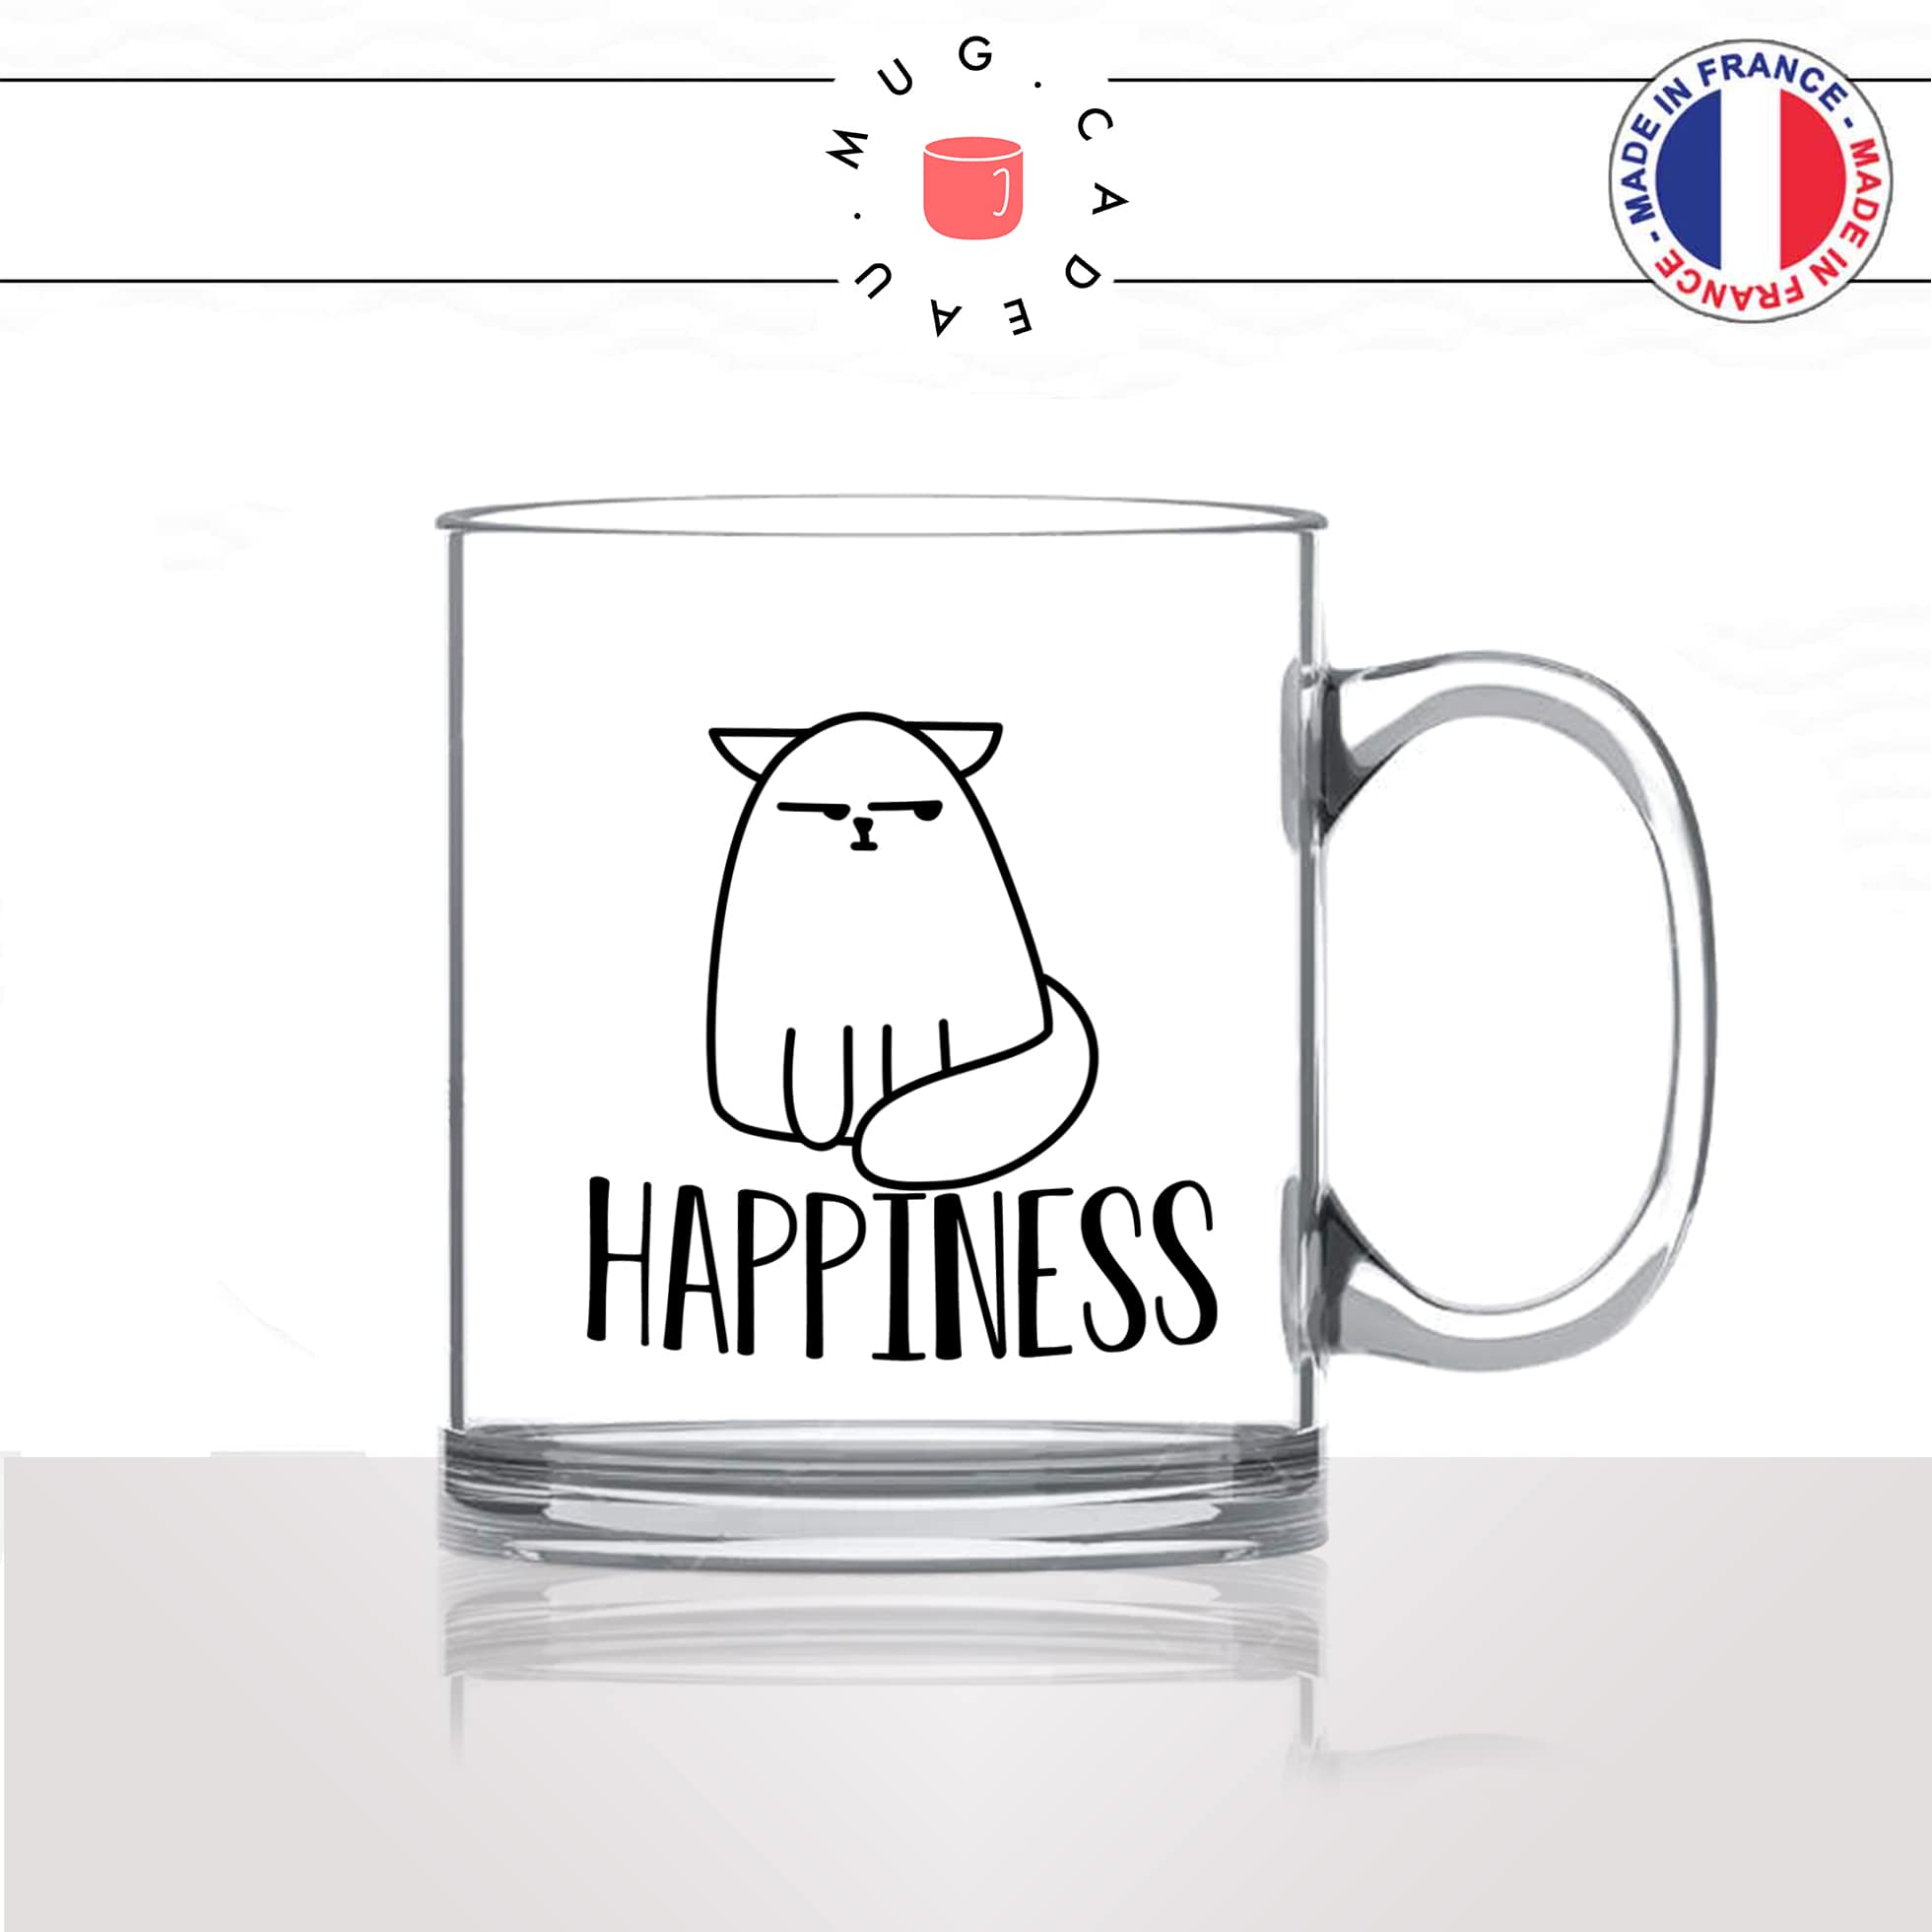 mug-tasse-en-verre-transparent-happiness-happy-content-humour-chat-mignon-animal-chaton-noir-fun-café-thé-idée-cadeau-original-personnalisé2-min